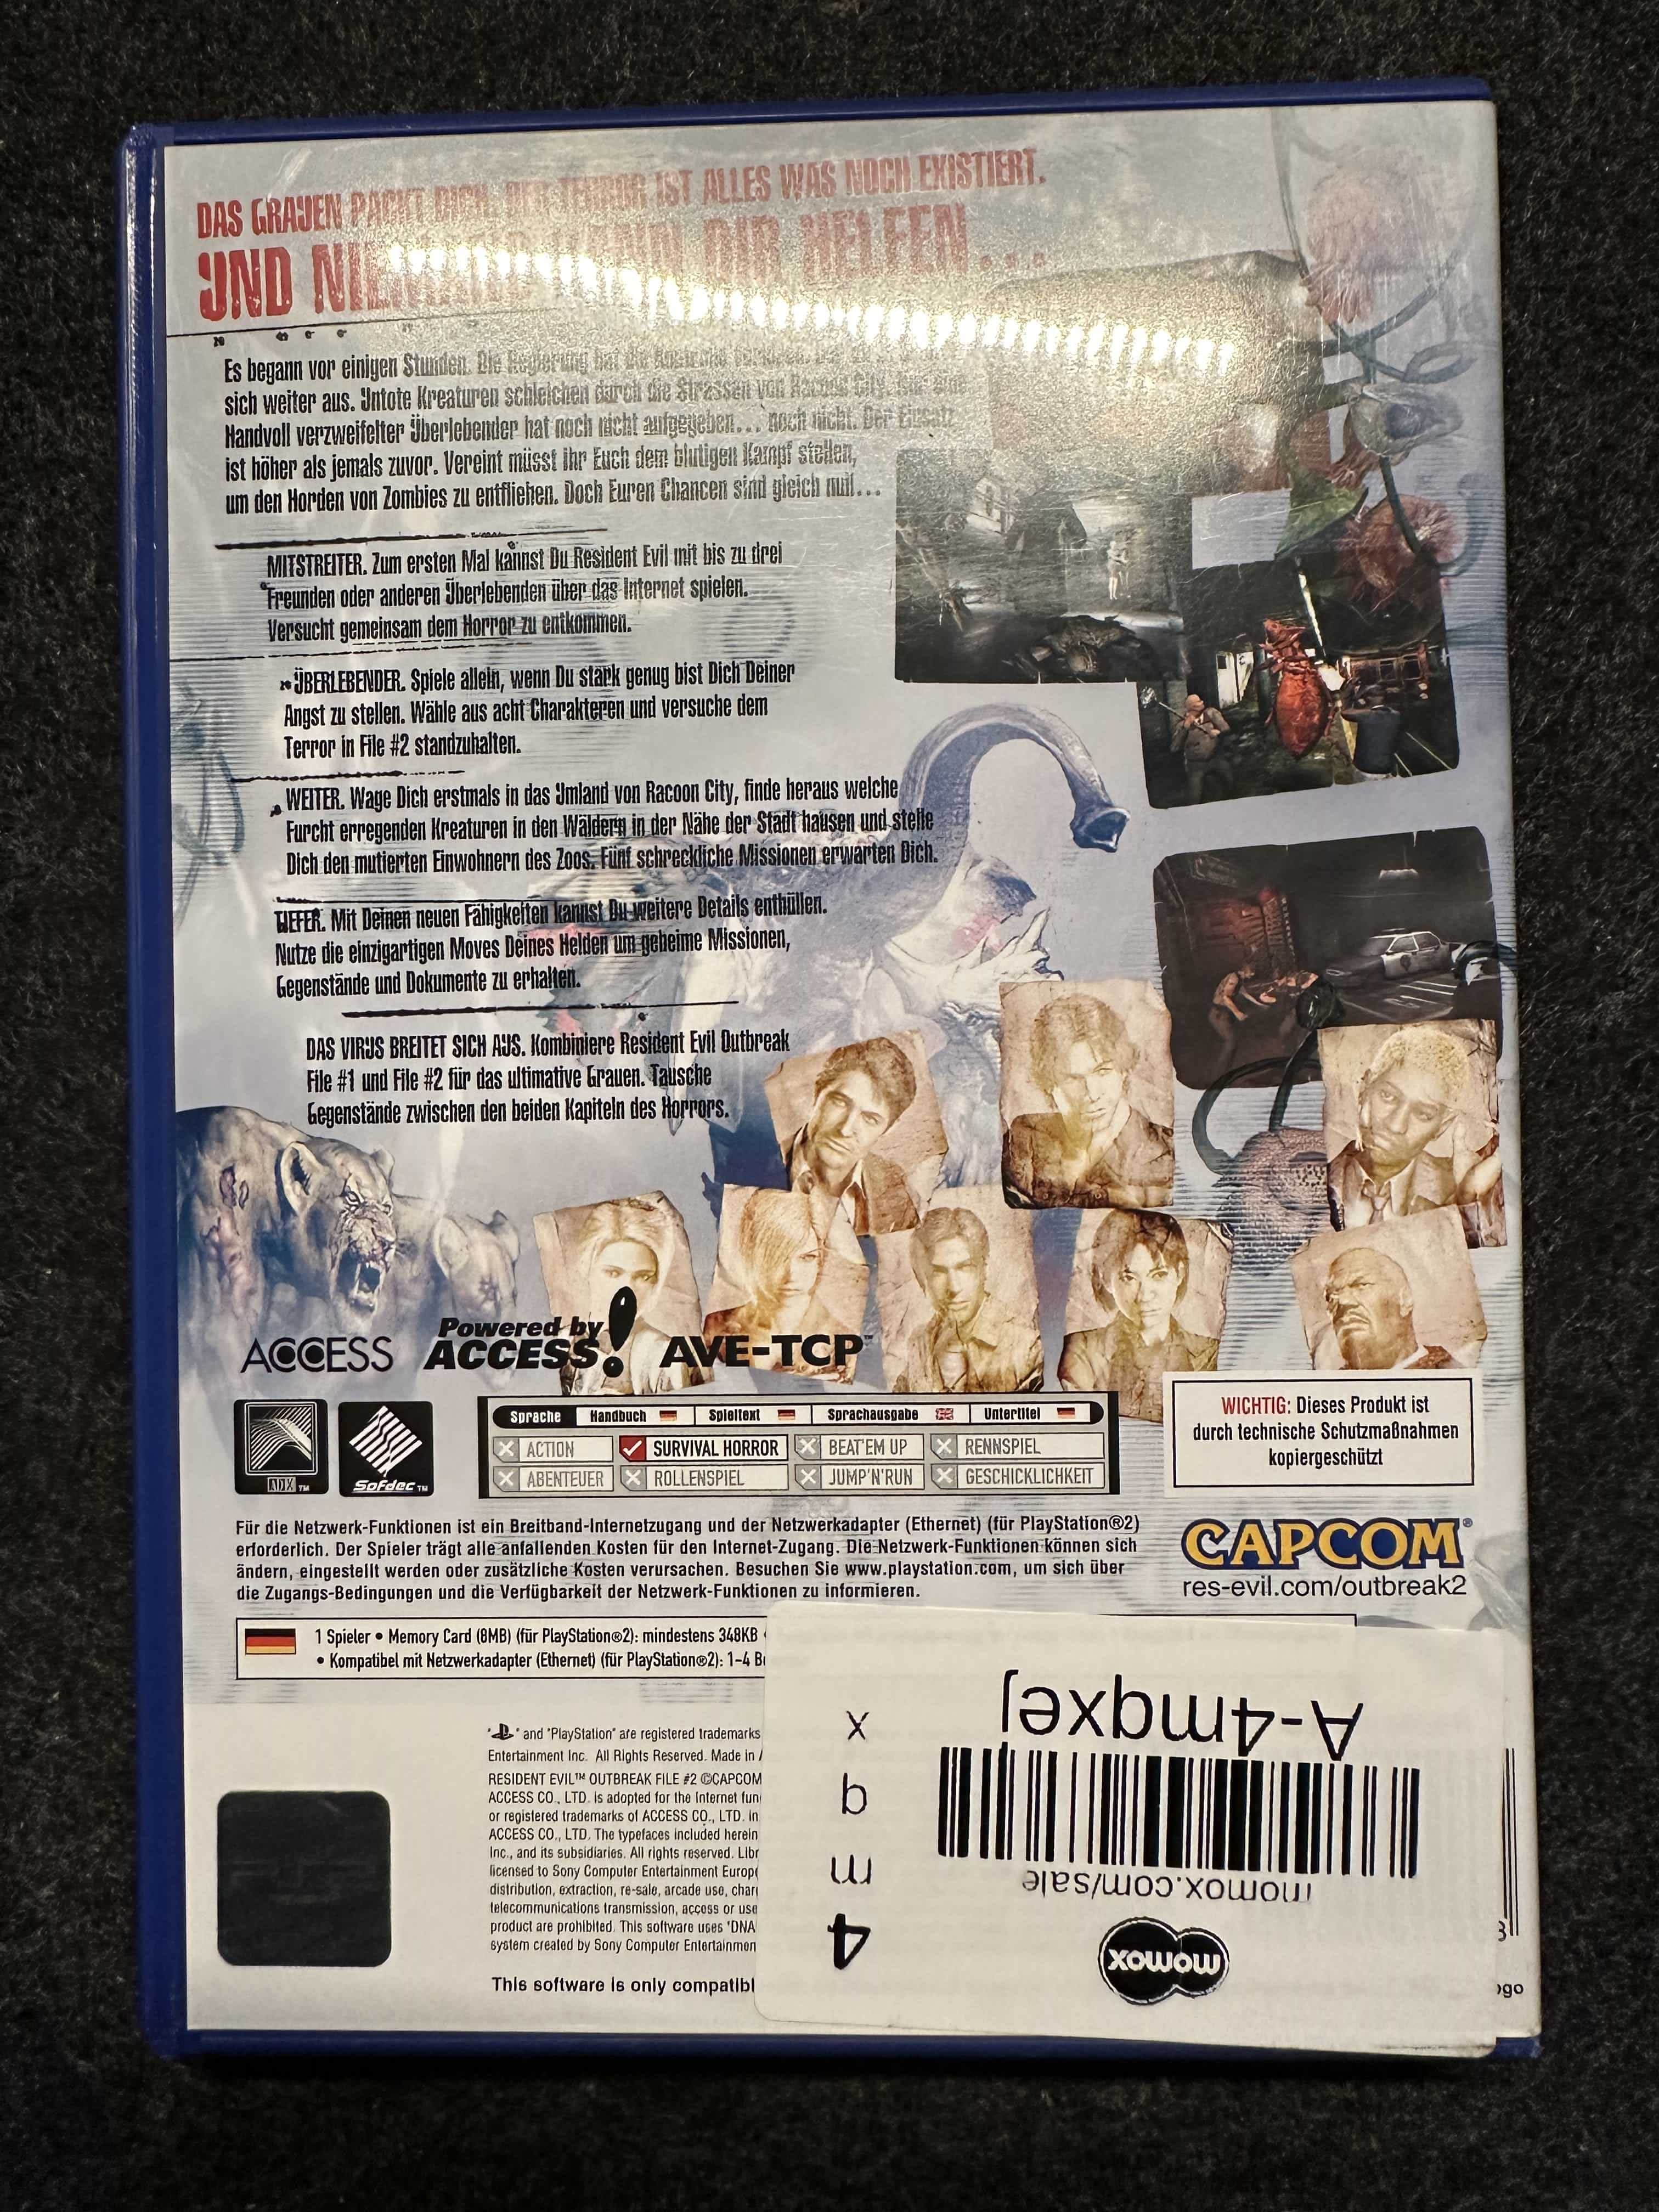 Resident Evil Outbreak File 2 - PS2